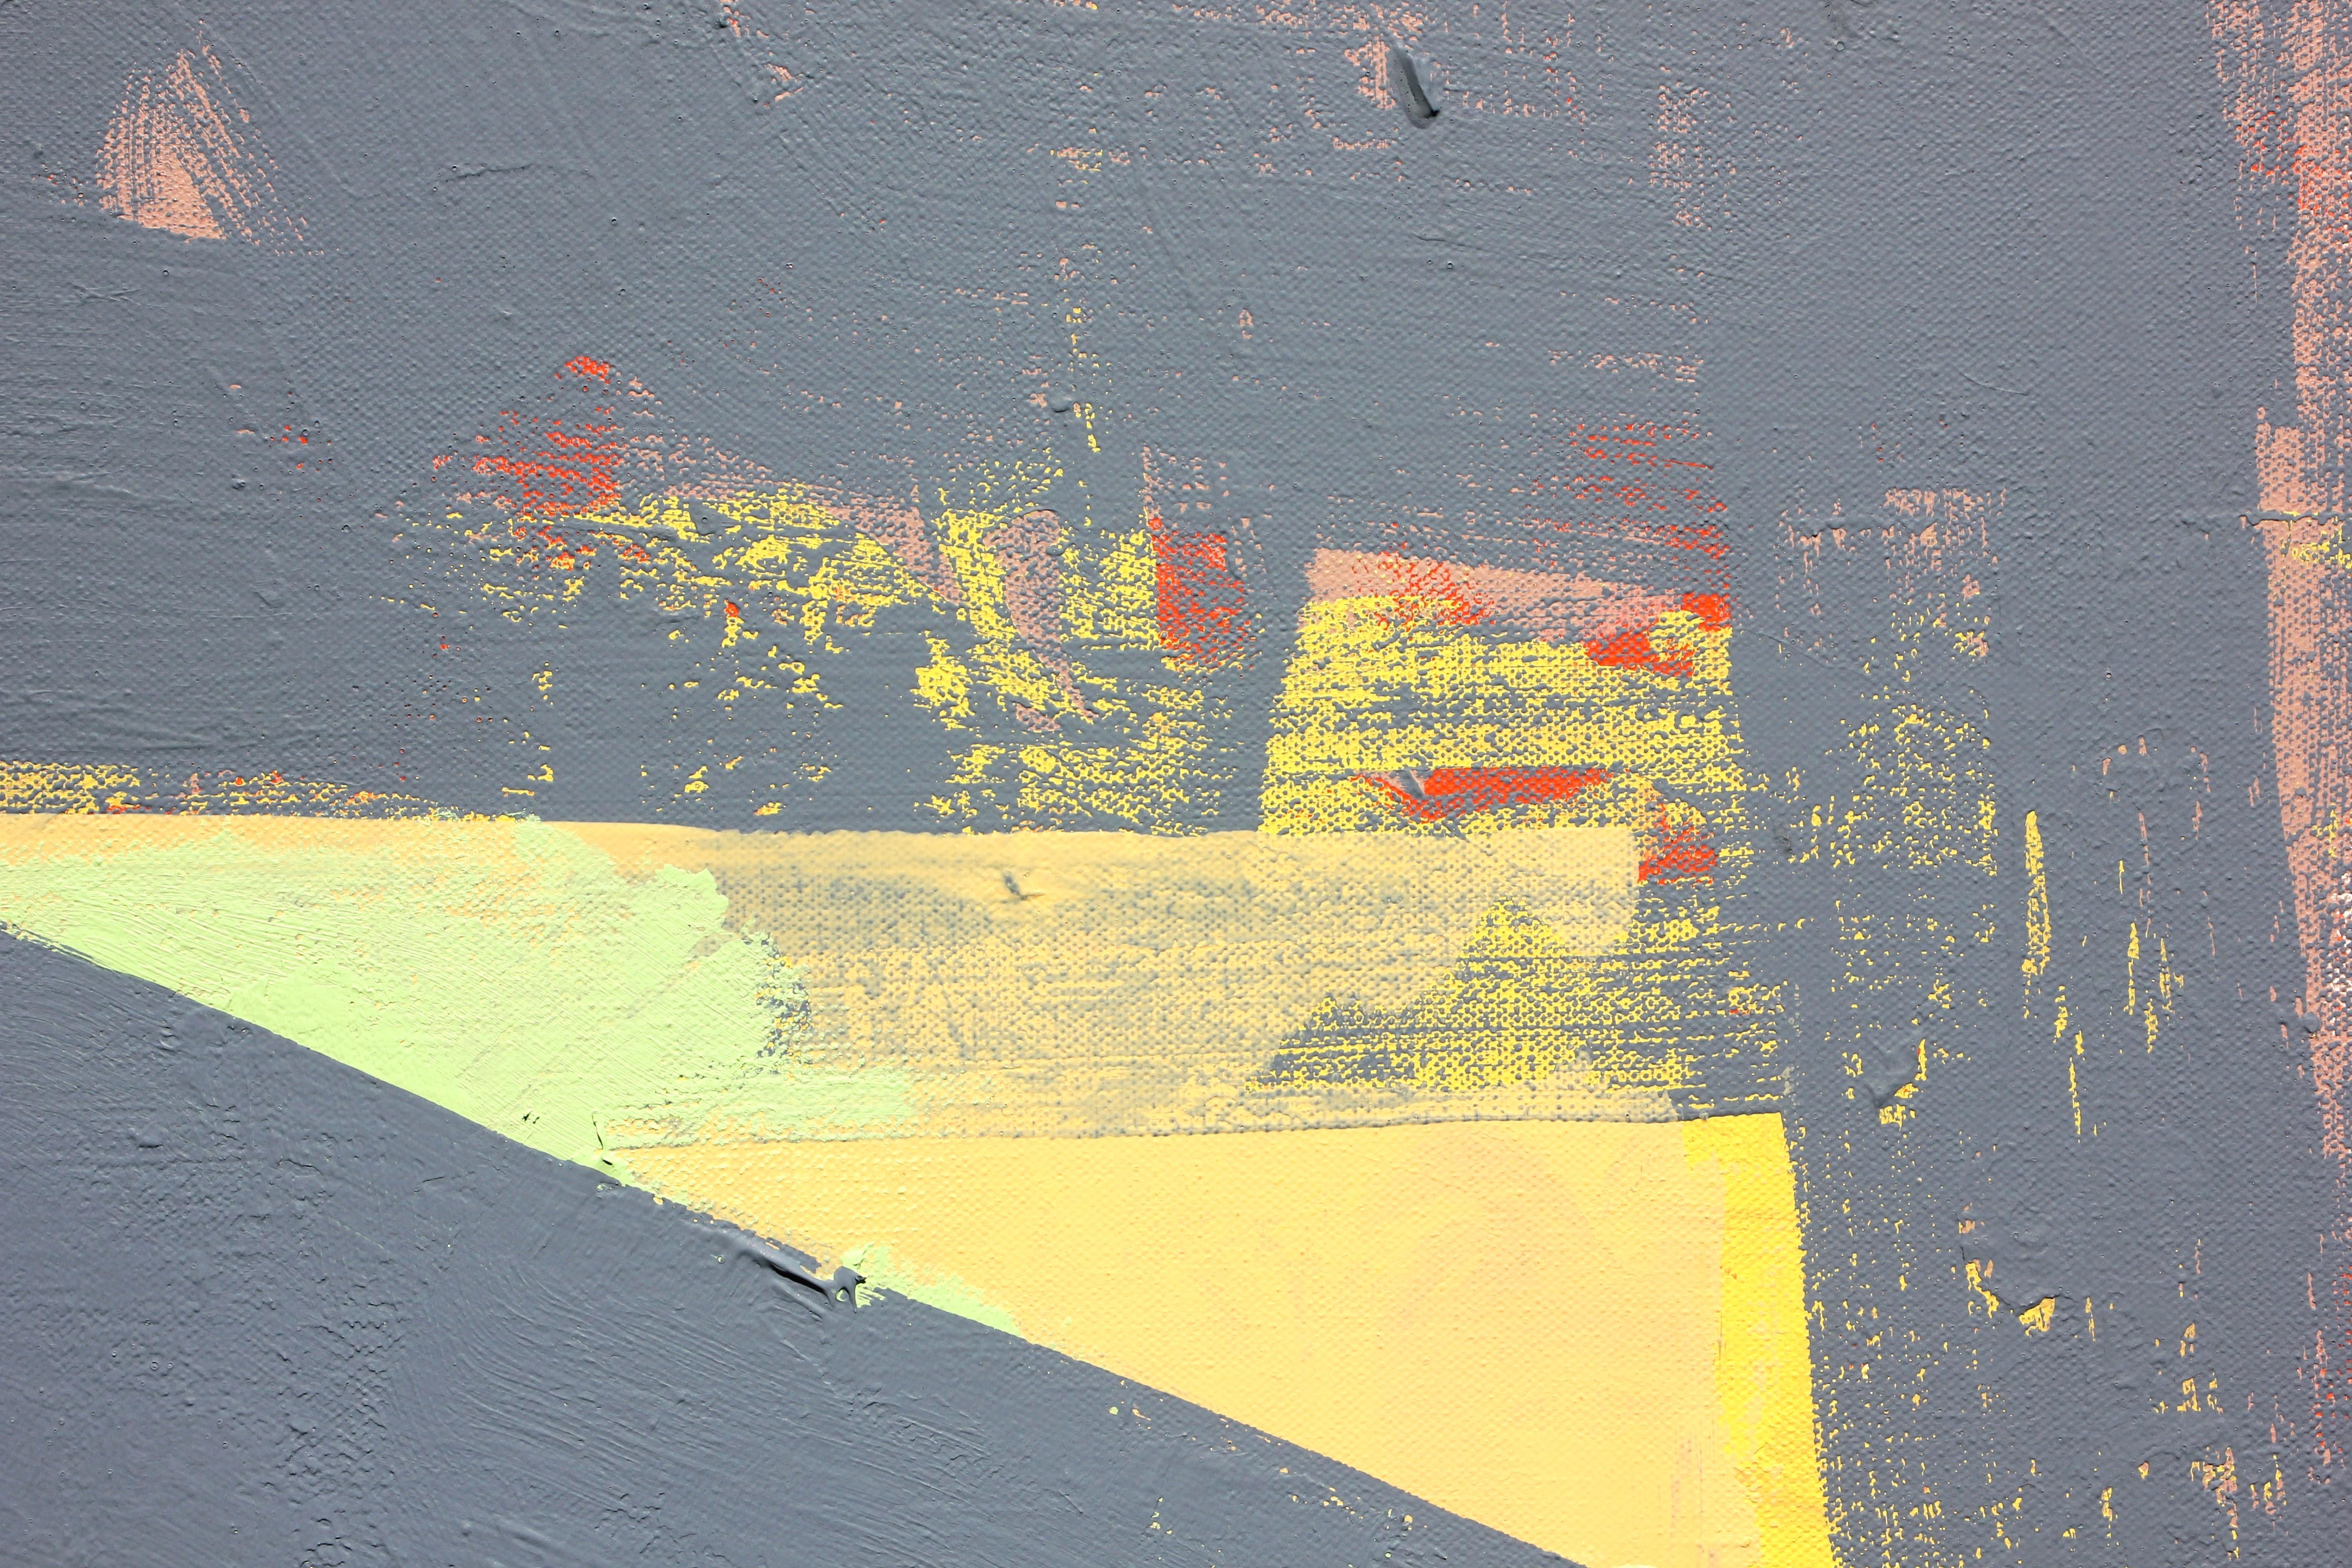 <p>Commentaires de l'artiste<br />L'artiste Joey Korom présente des œuvres abstraites aux tons neutres dans des structures subtilement organisées. Il exécute la pièce moderne dans des formes grises adjacentes suggérant des formes contemporaines